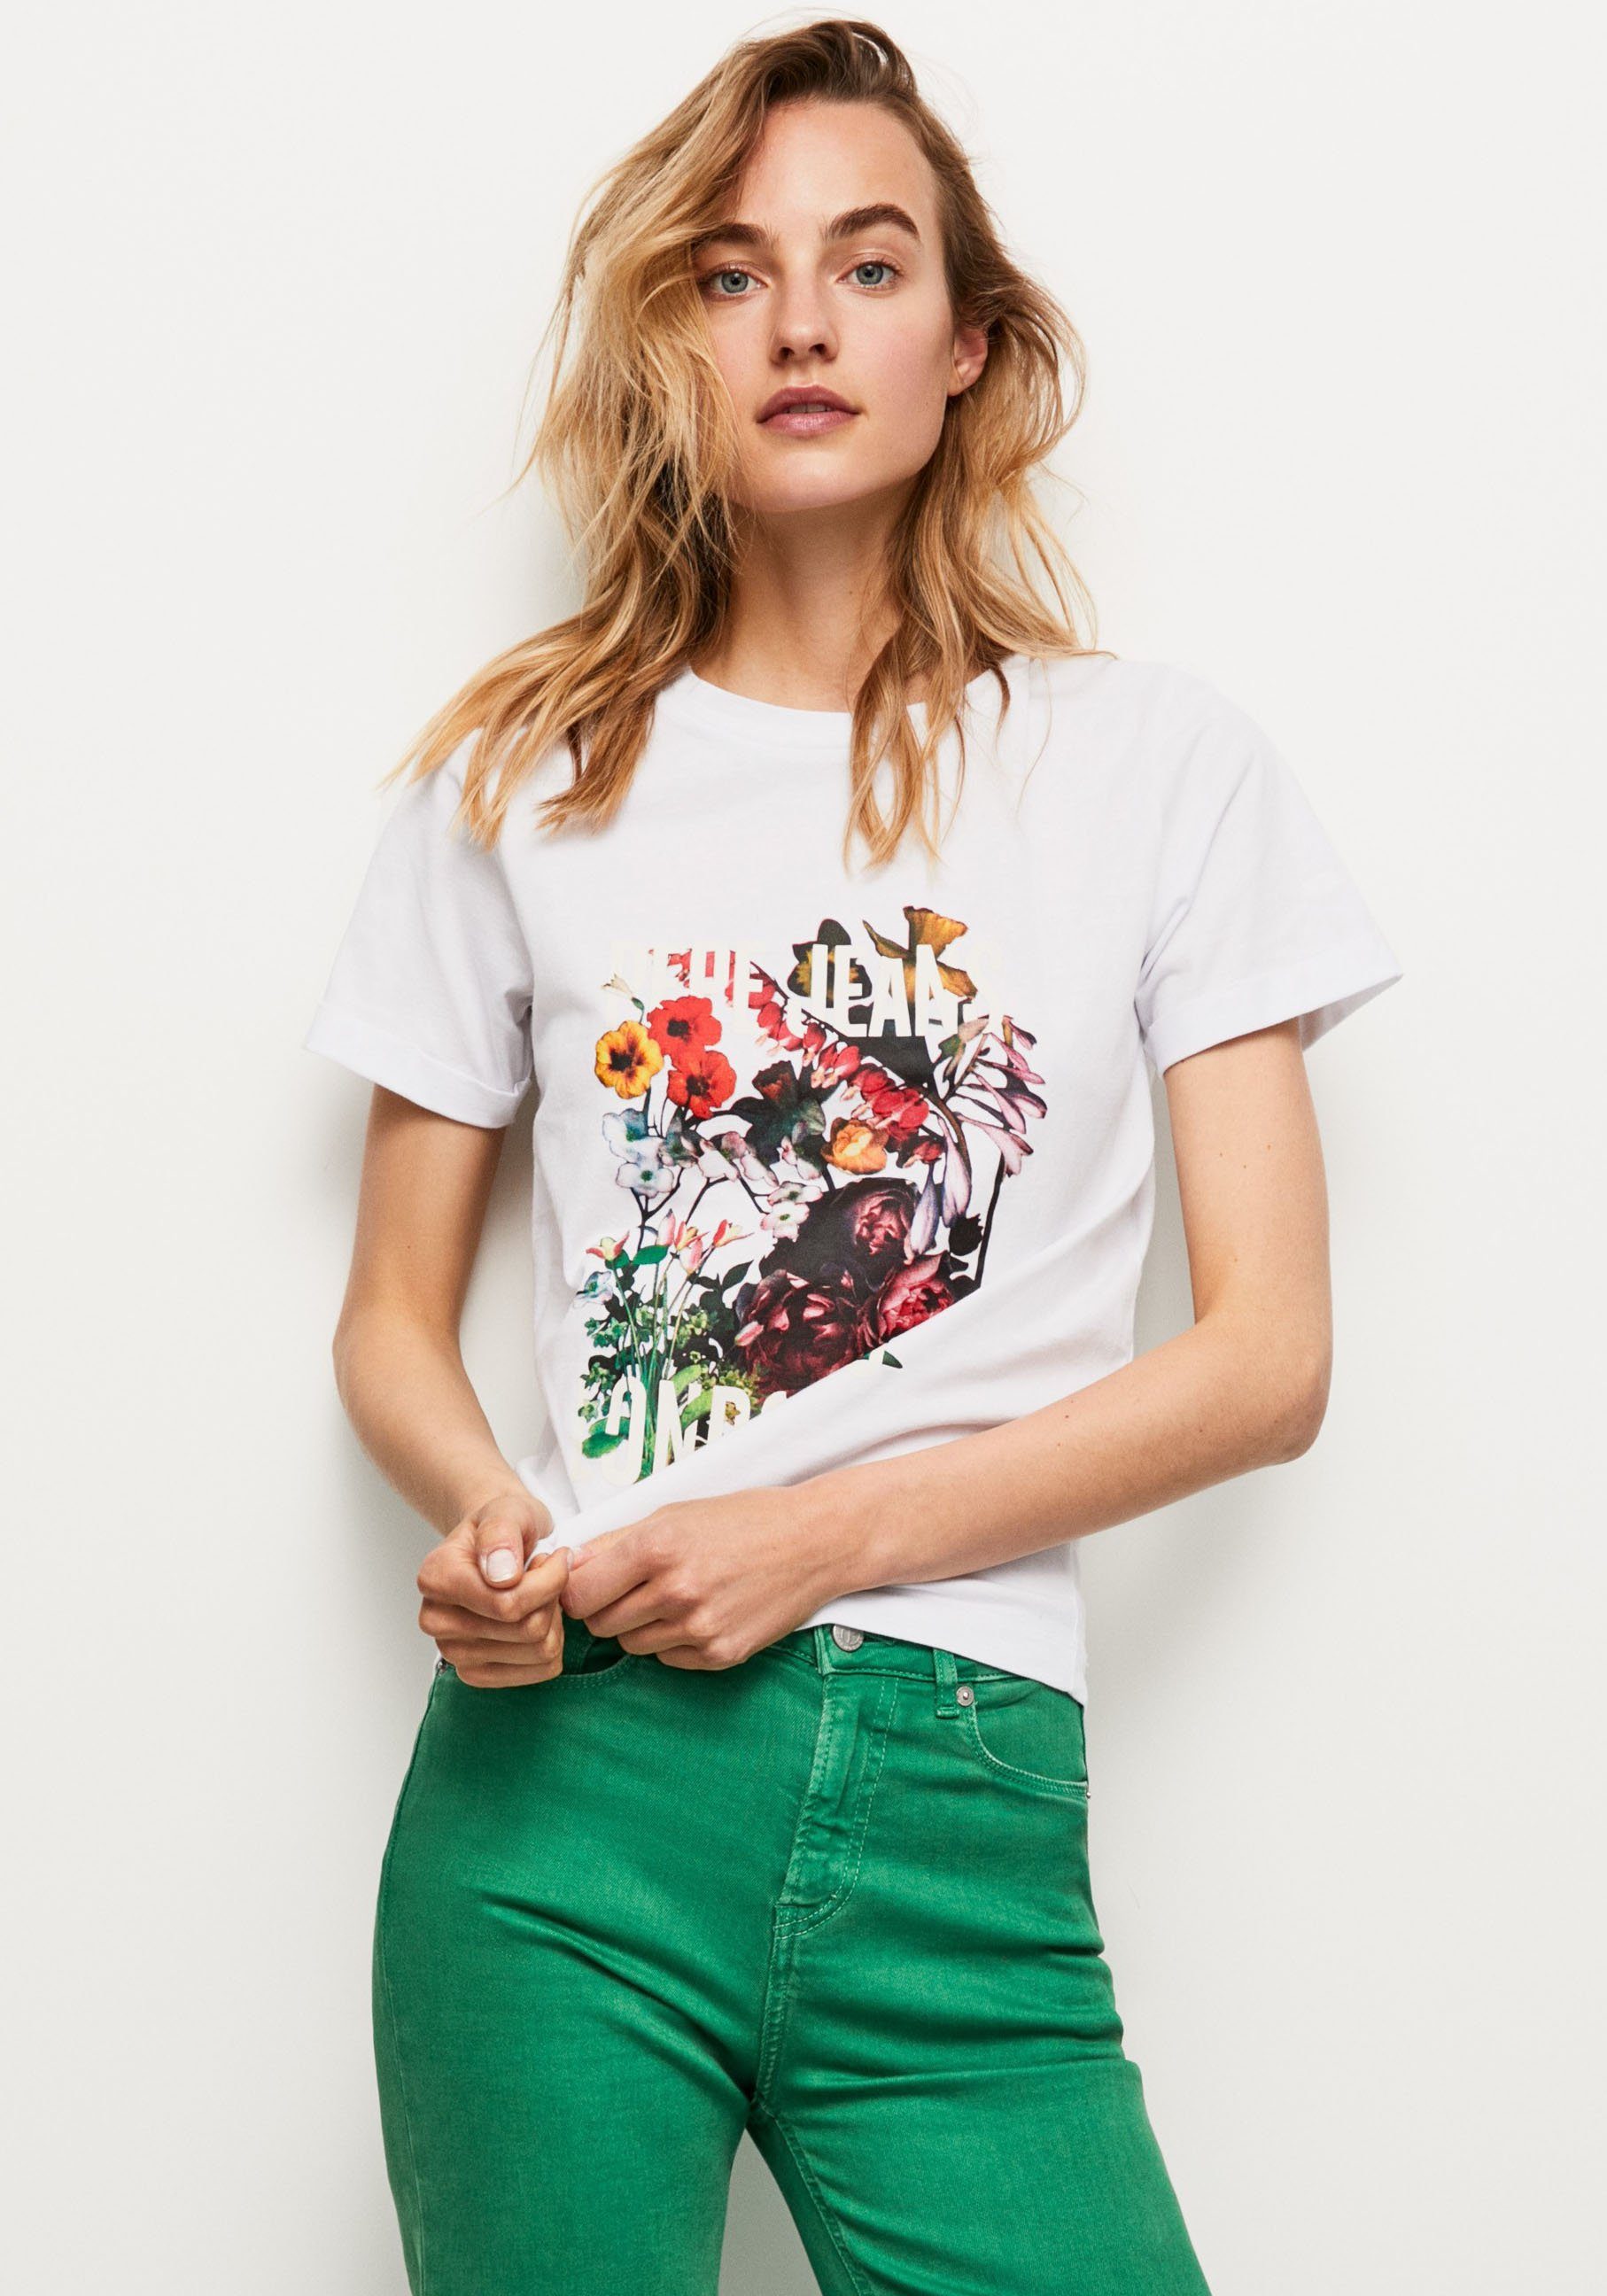 und T-Shirt 800WHITE oversized markentypischem Passform Pepe tollem Frontprint in mit Jeans